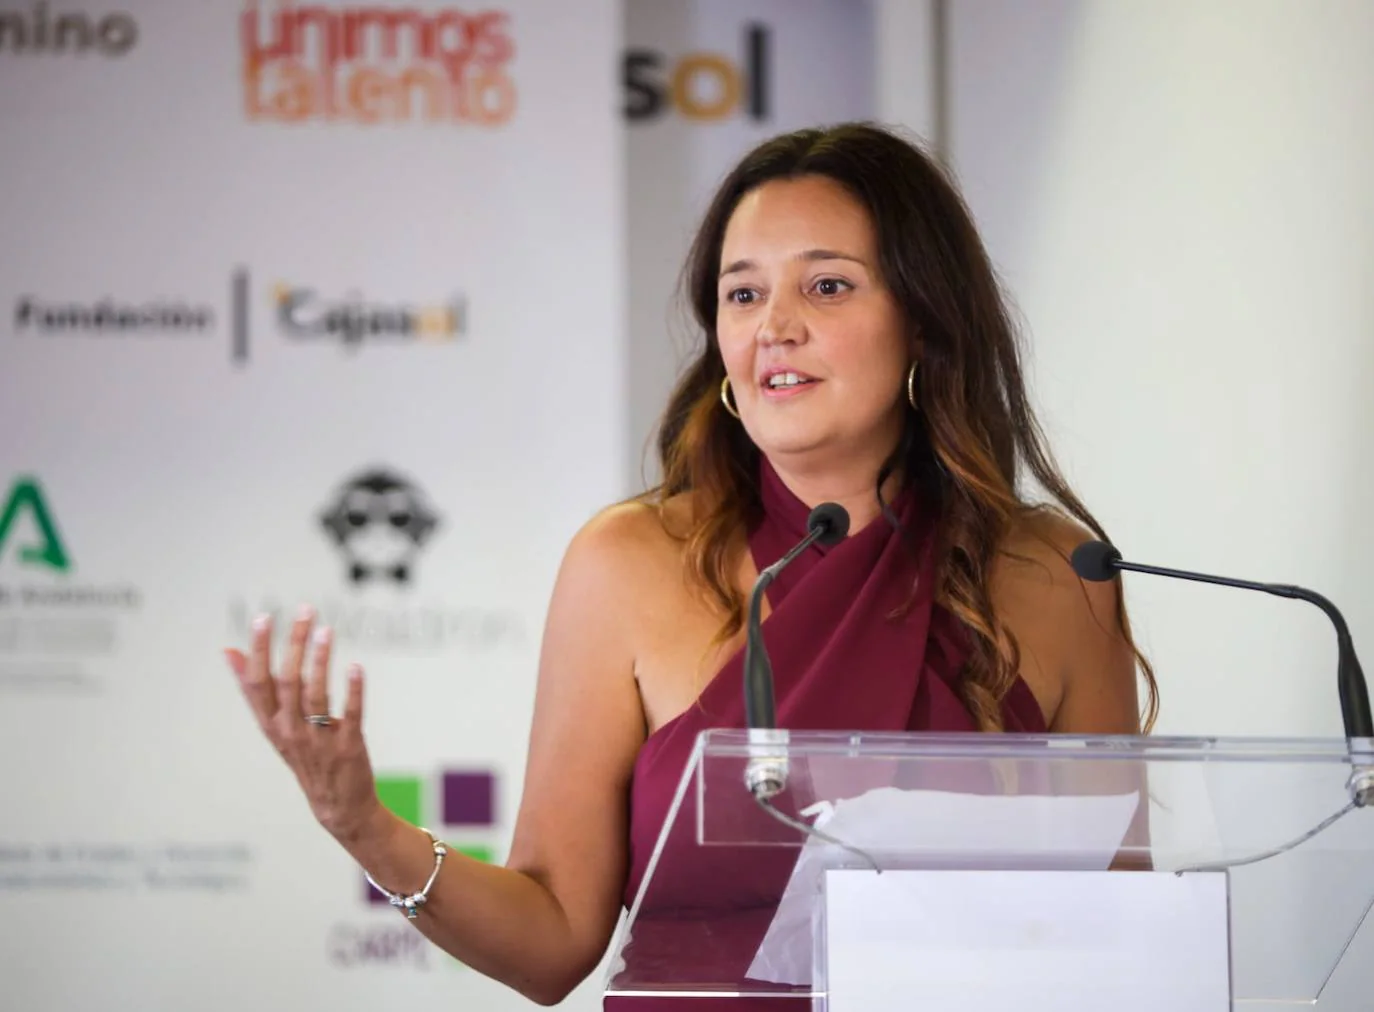 Fotos: Premios al emprendimiento femenino en Cajasol